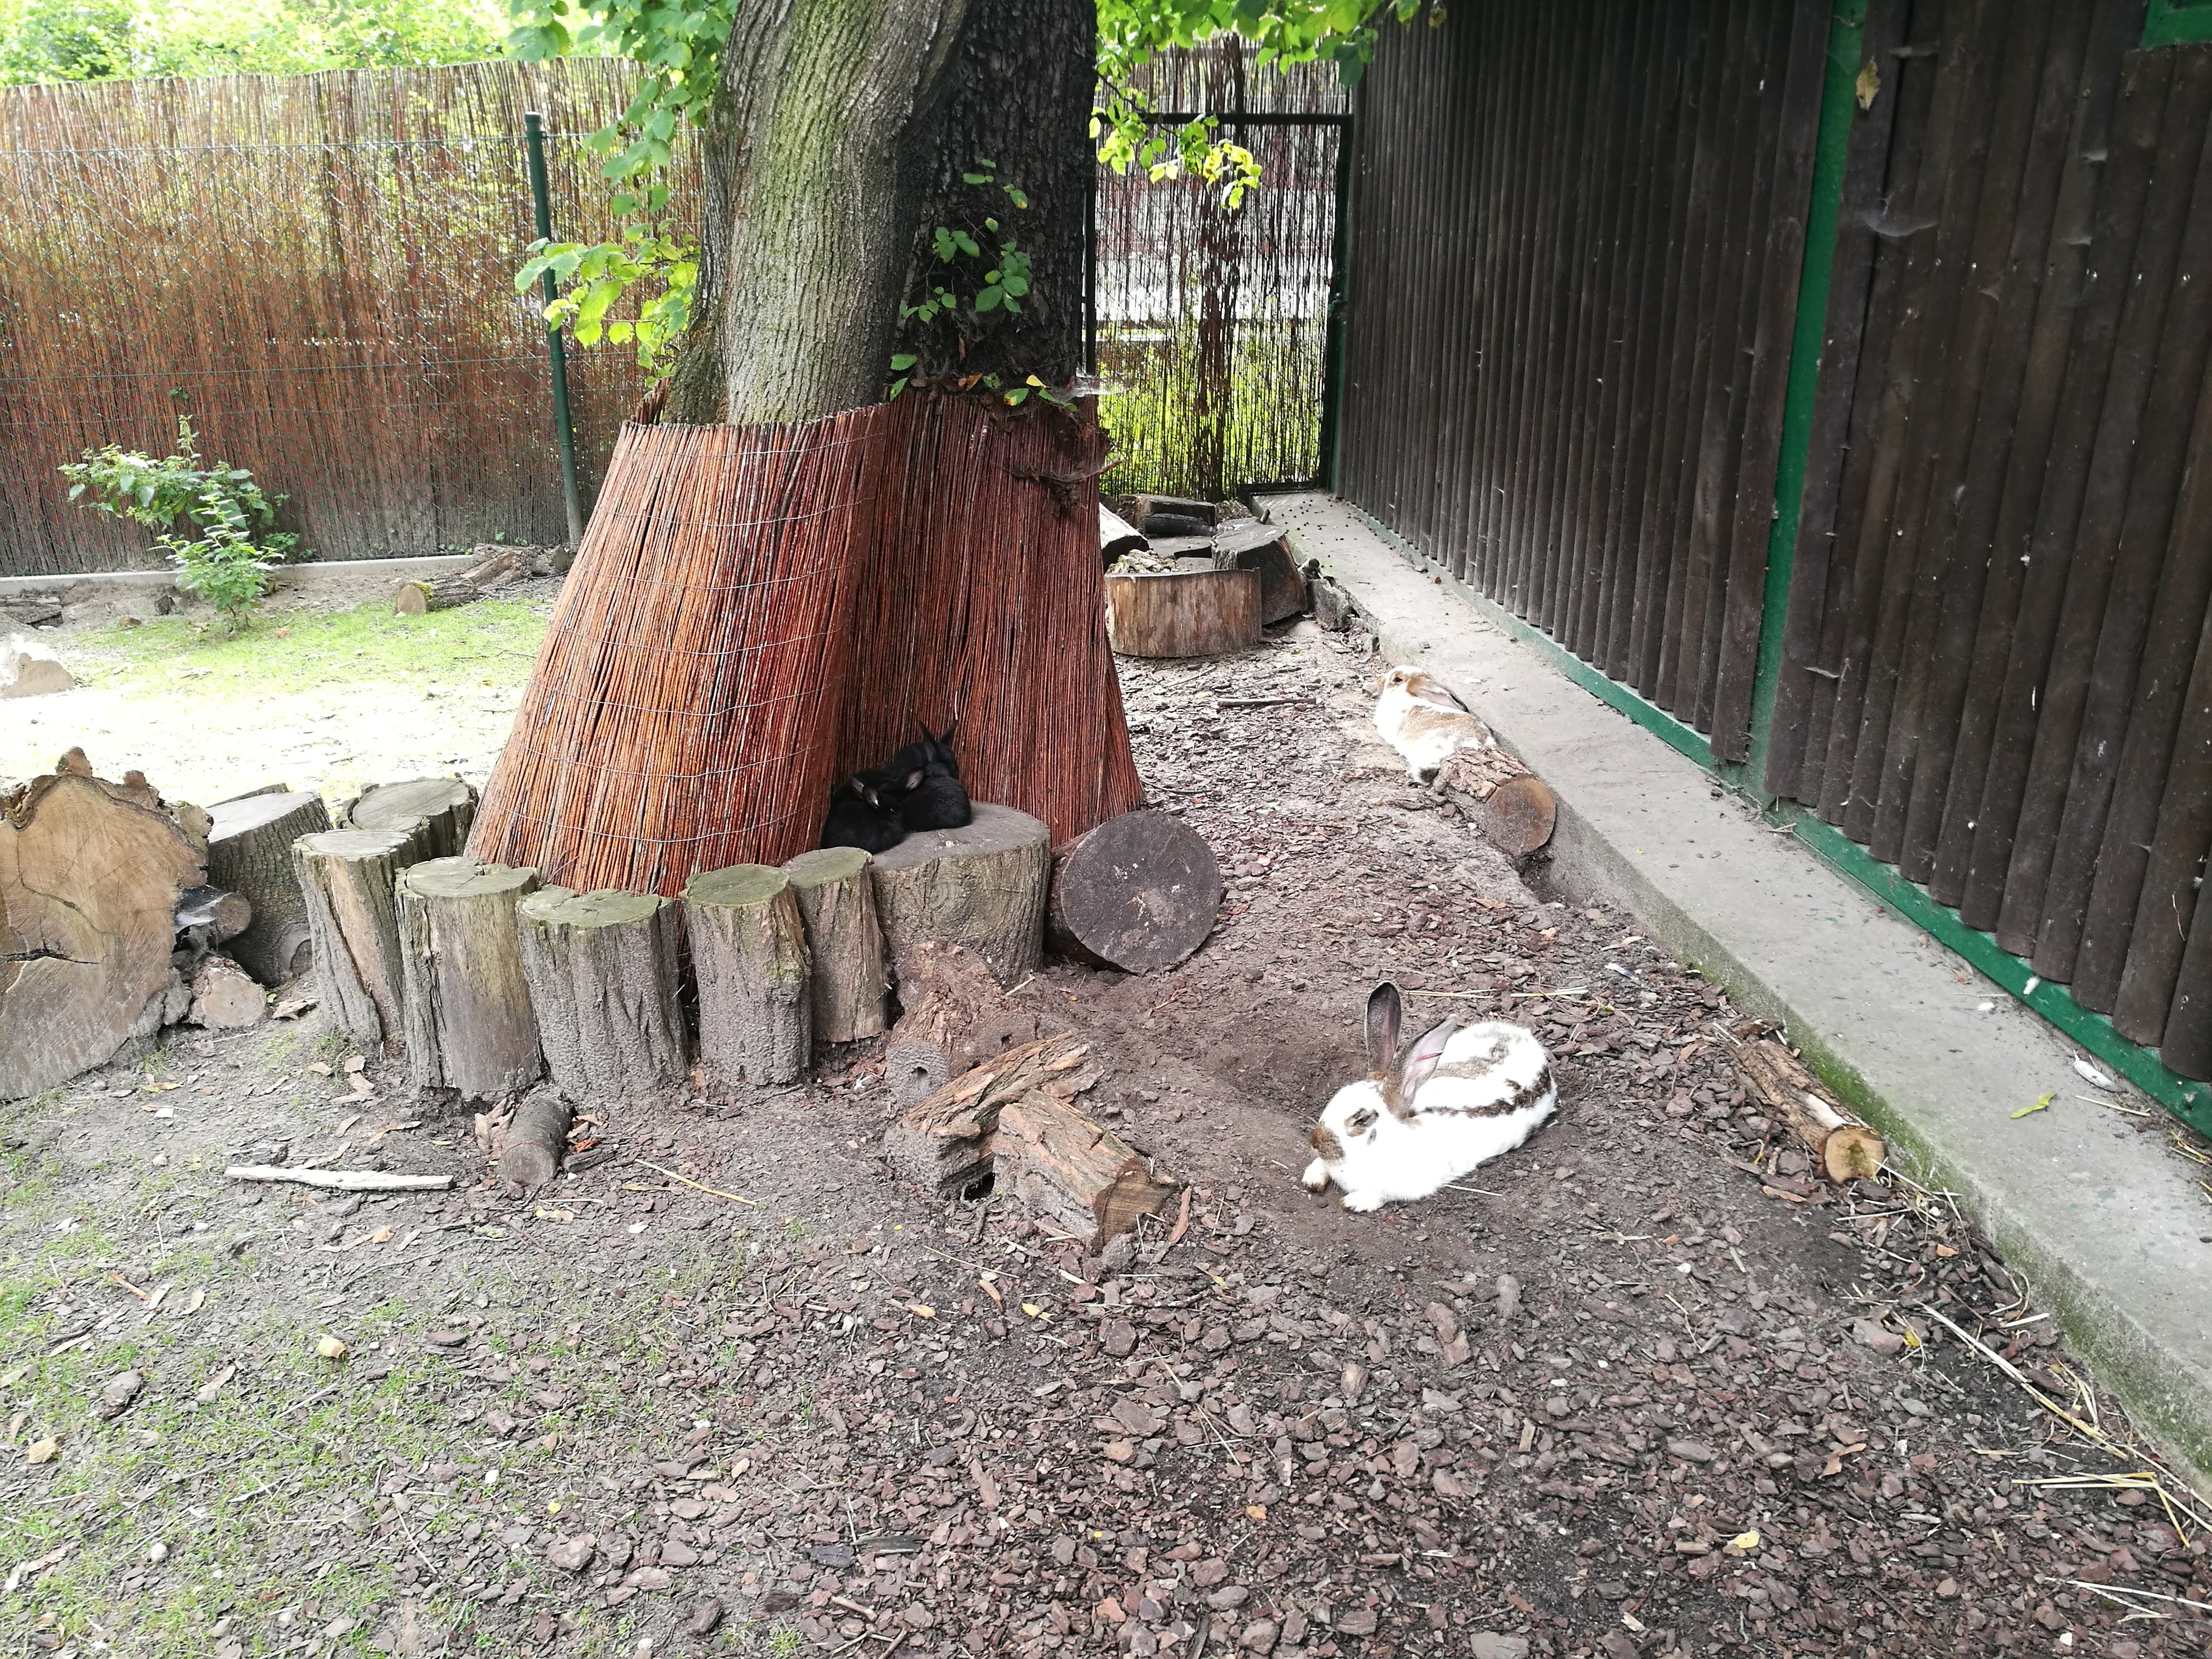 Bunnies in a zoo